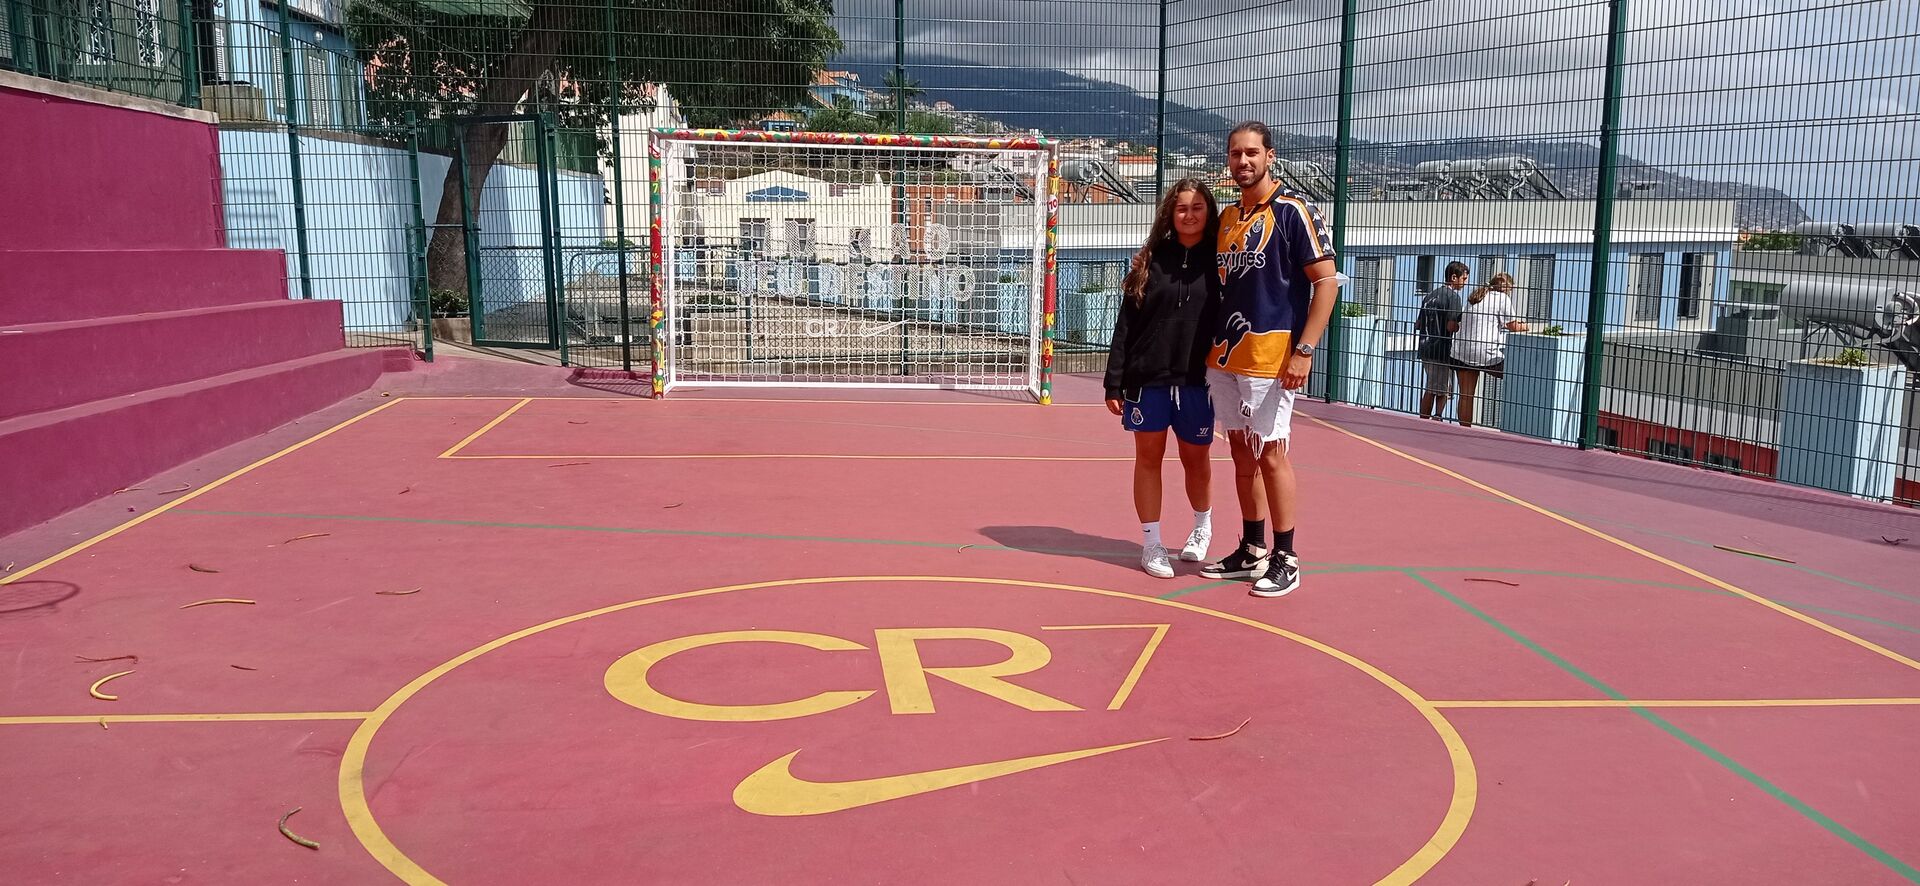 O português Rubens Ferreira e sua namorada, que moram na Suíça, visitam a quadra de CR7 pela primeira vez - Sputnik Brasil, 1920, 09.11.2021